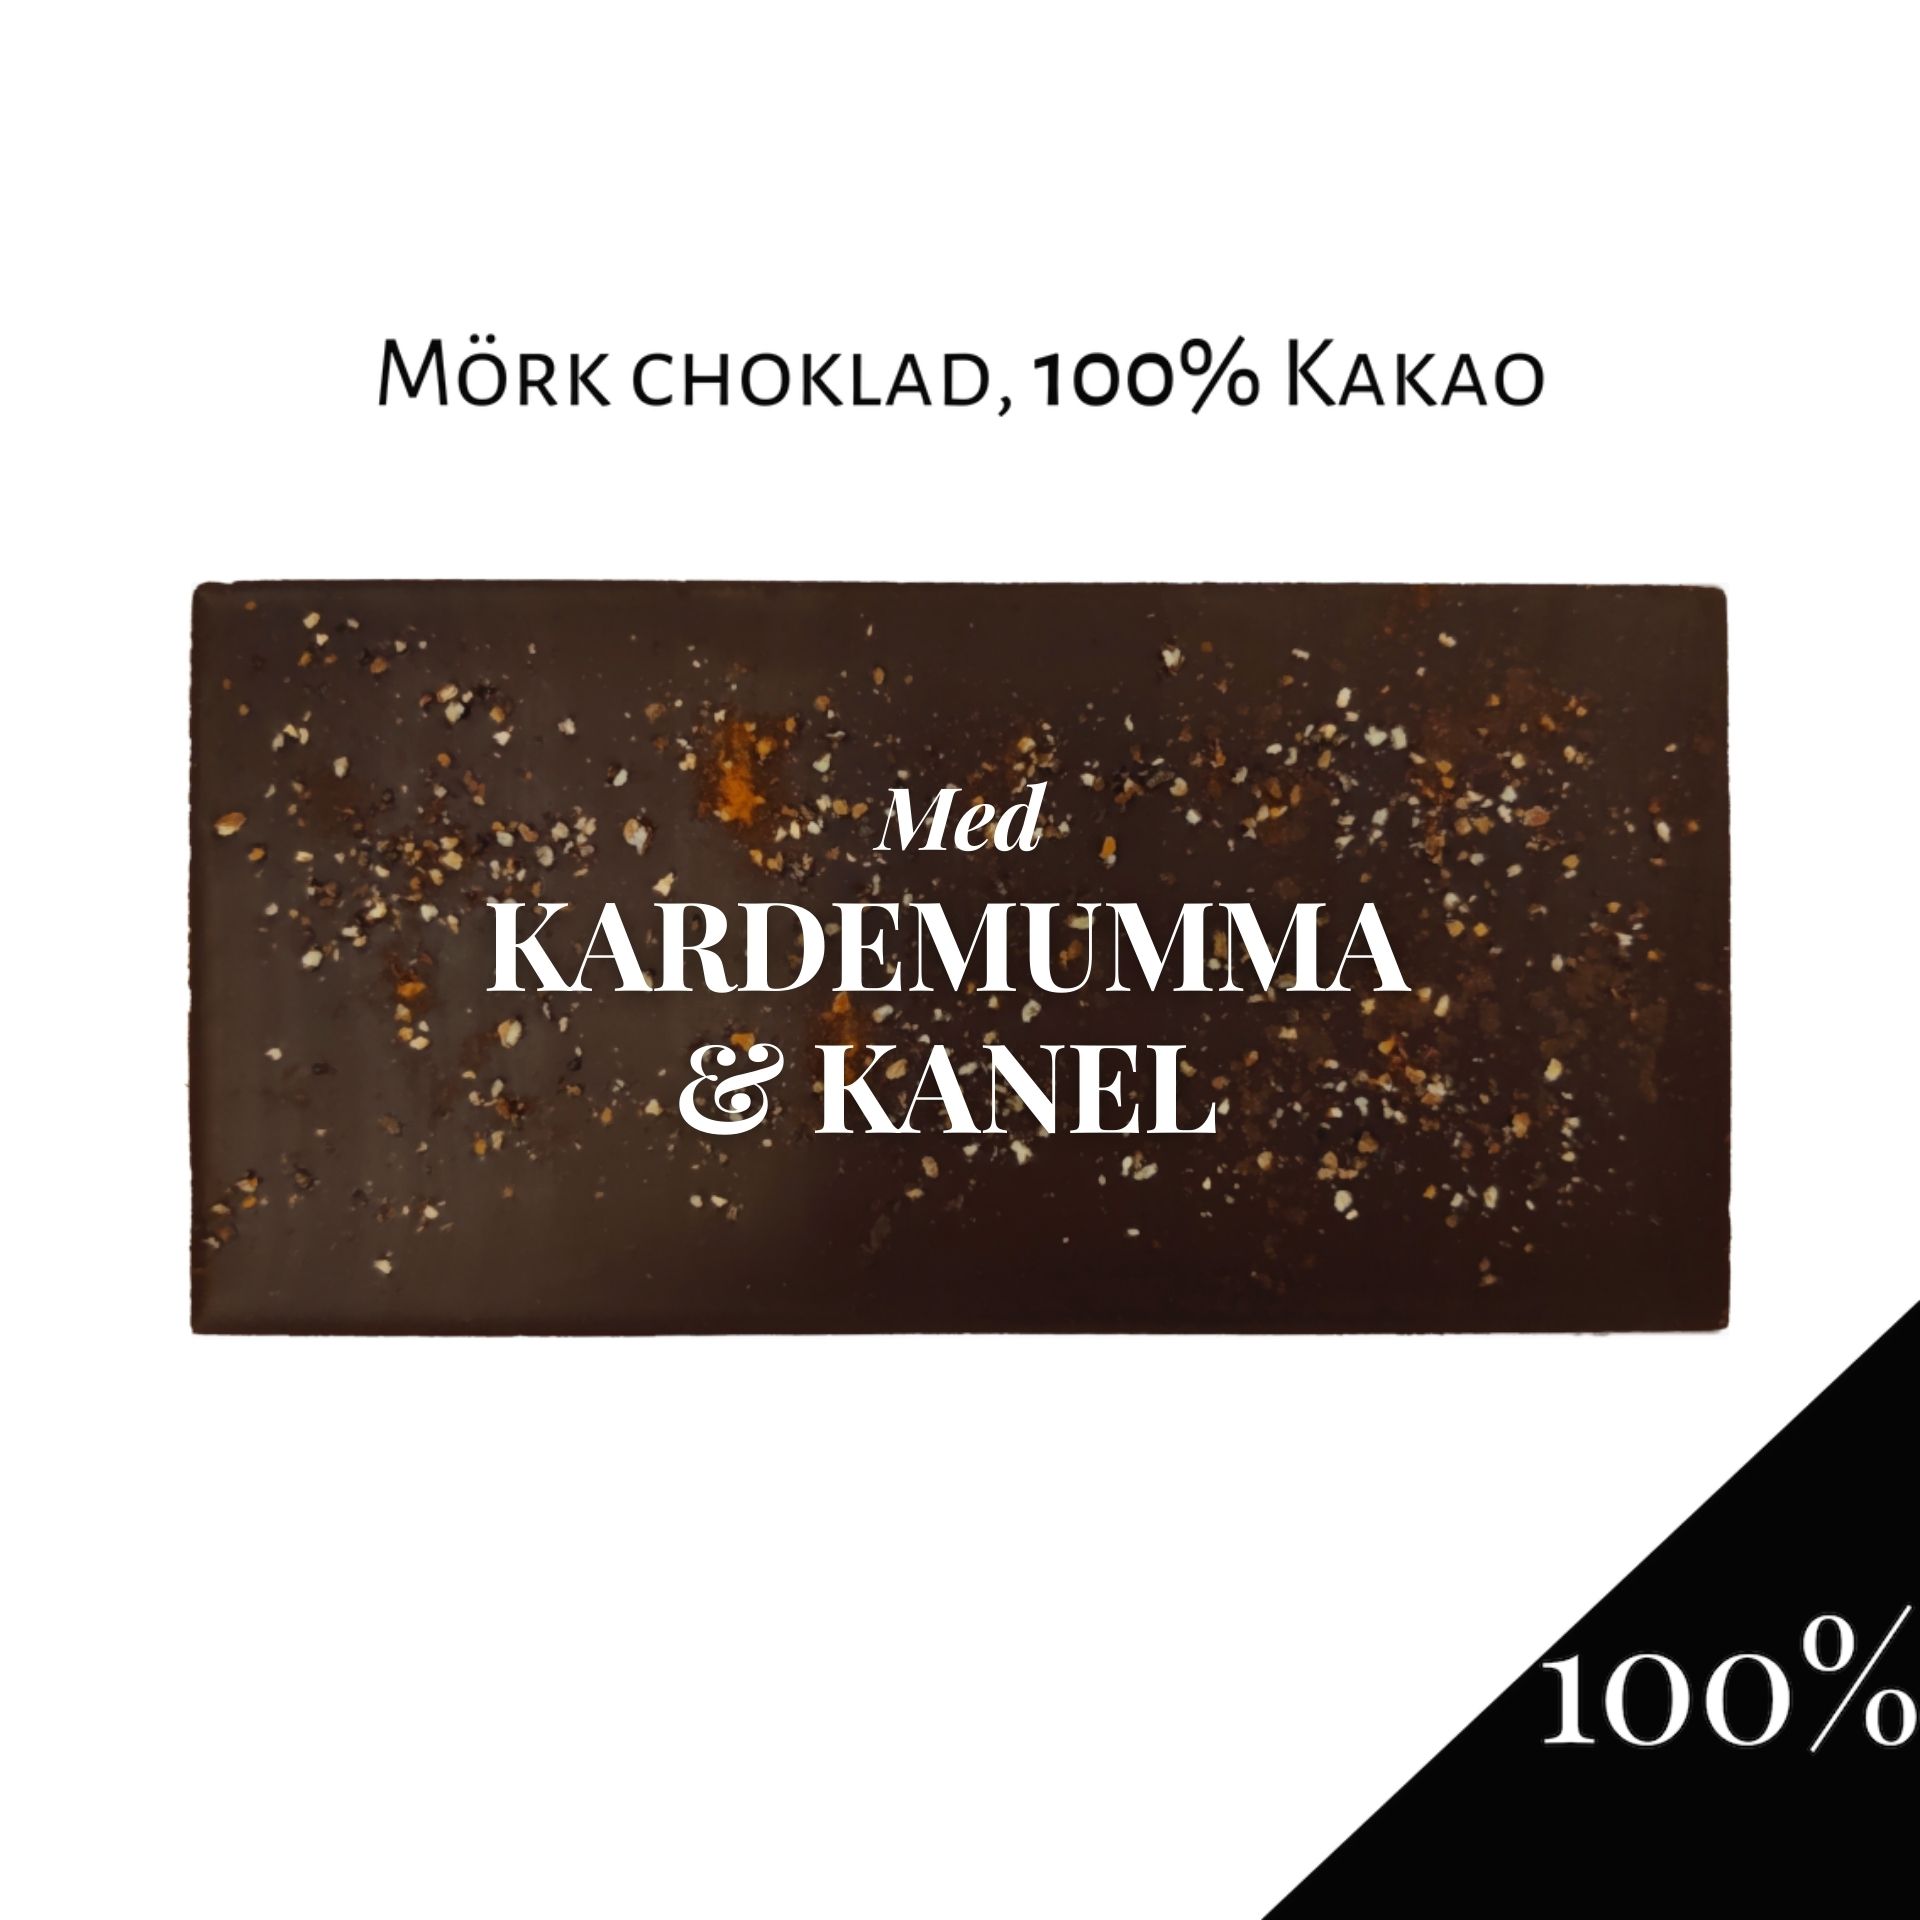 Pralinhuset - 100% Kakao - Kardemumma & Kanel